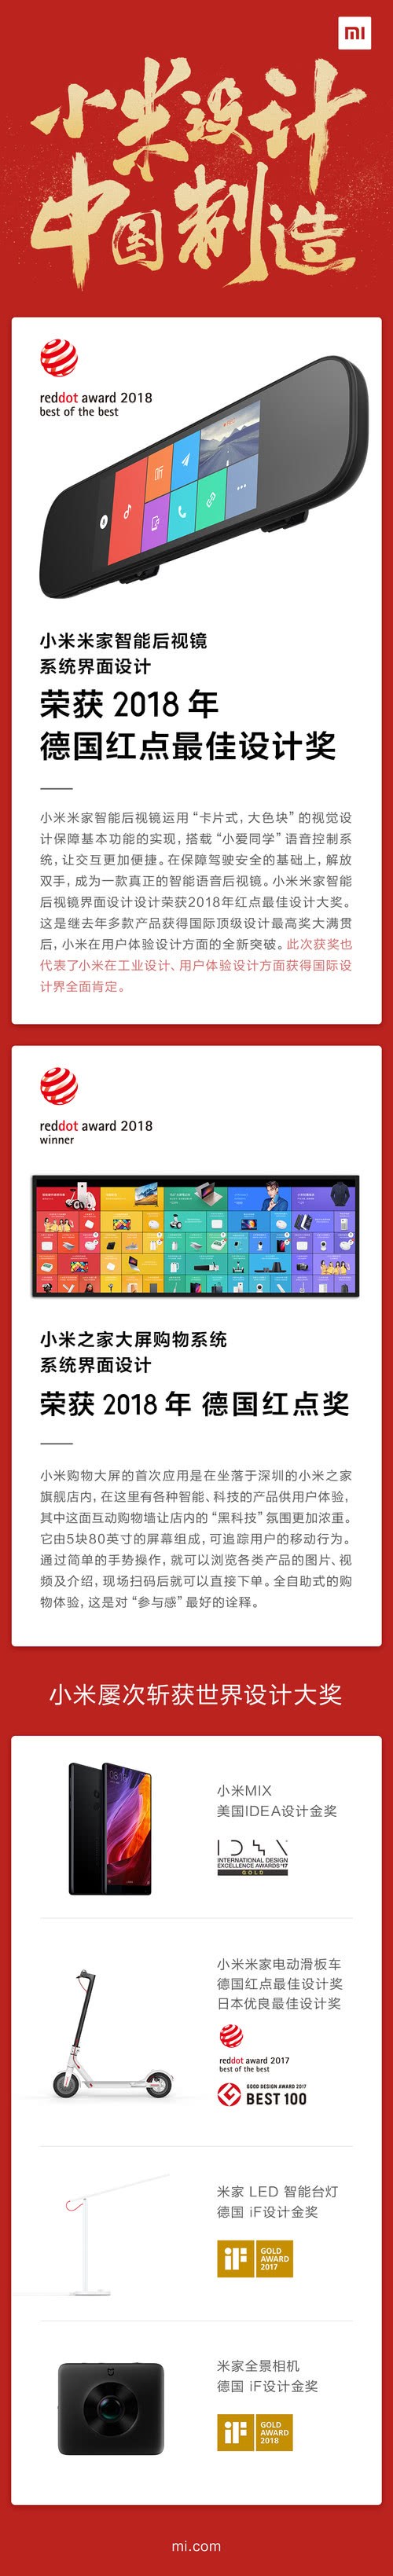 小米米家智能后视镜荣获2018年德国红点最佳设计奖